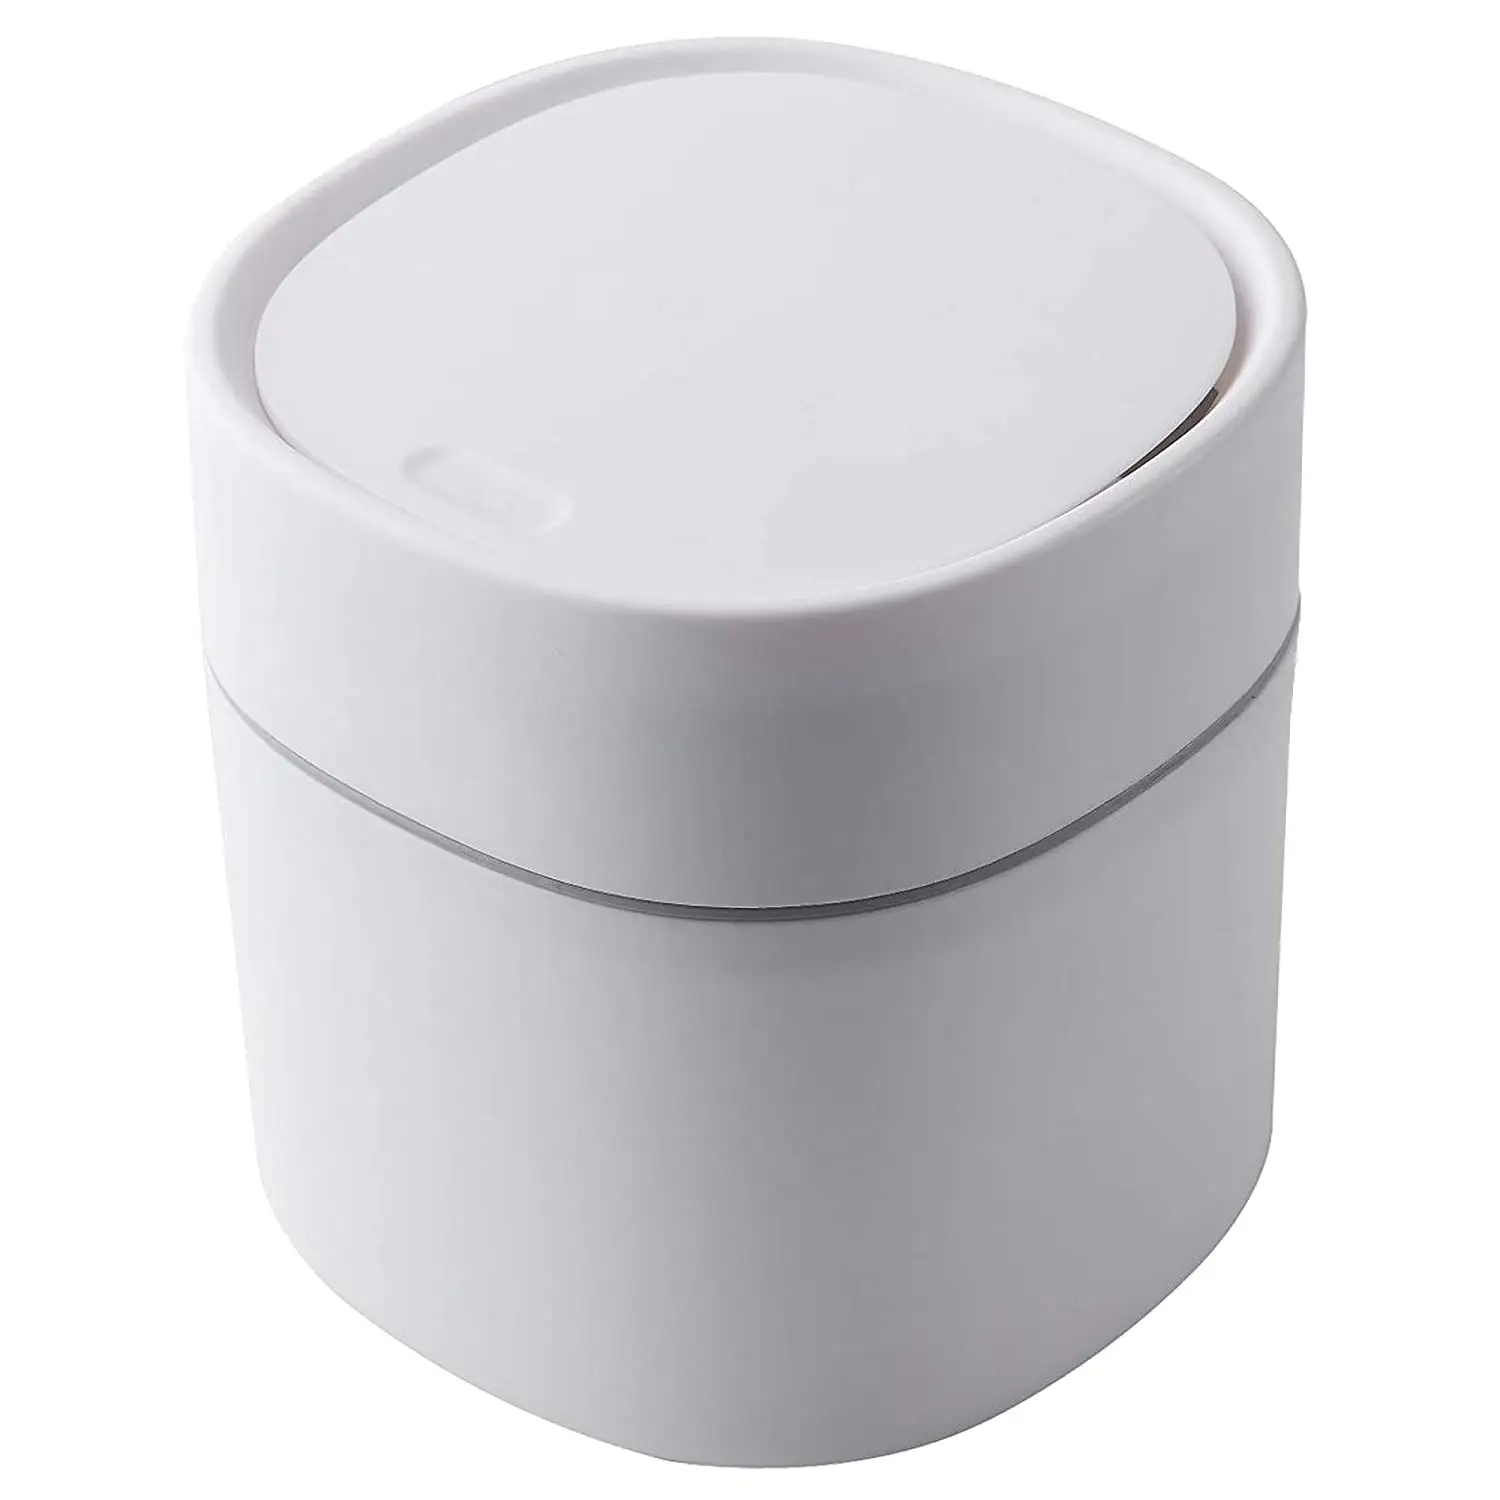 Mini poubelle en plastique avec couvercle corbeille pour vanité de salle de bain, bureau, Table ou Table basse-Dispose de ronds en coton